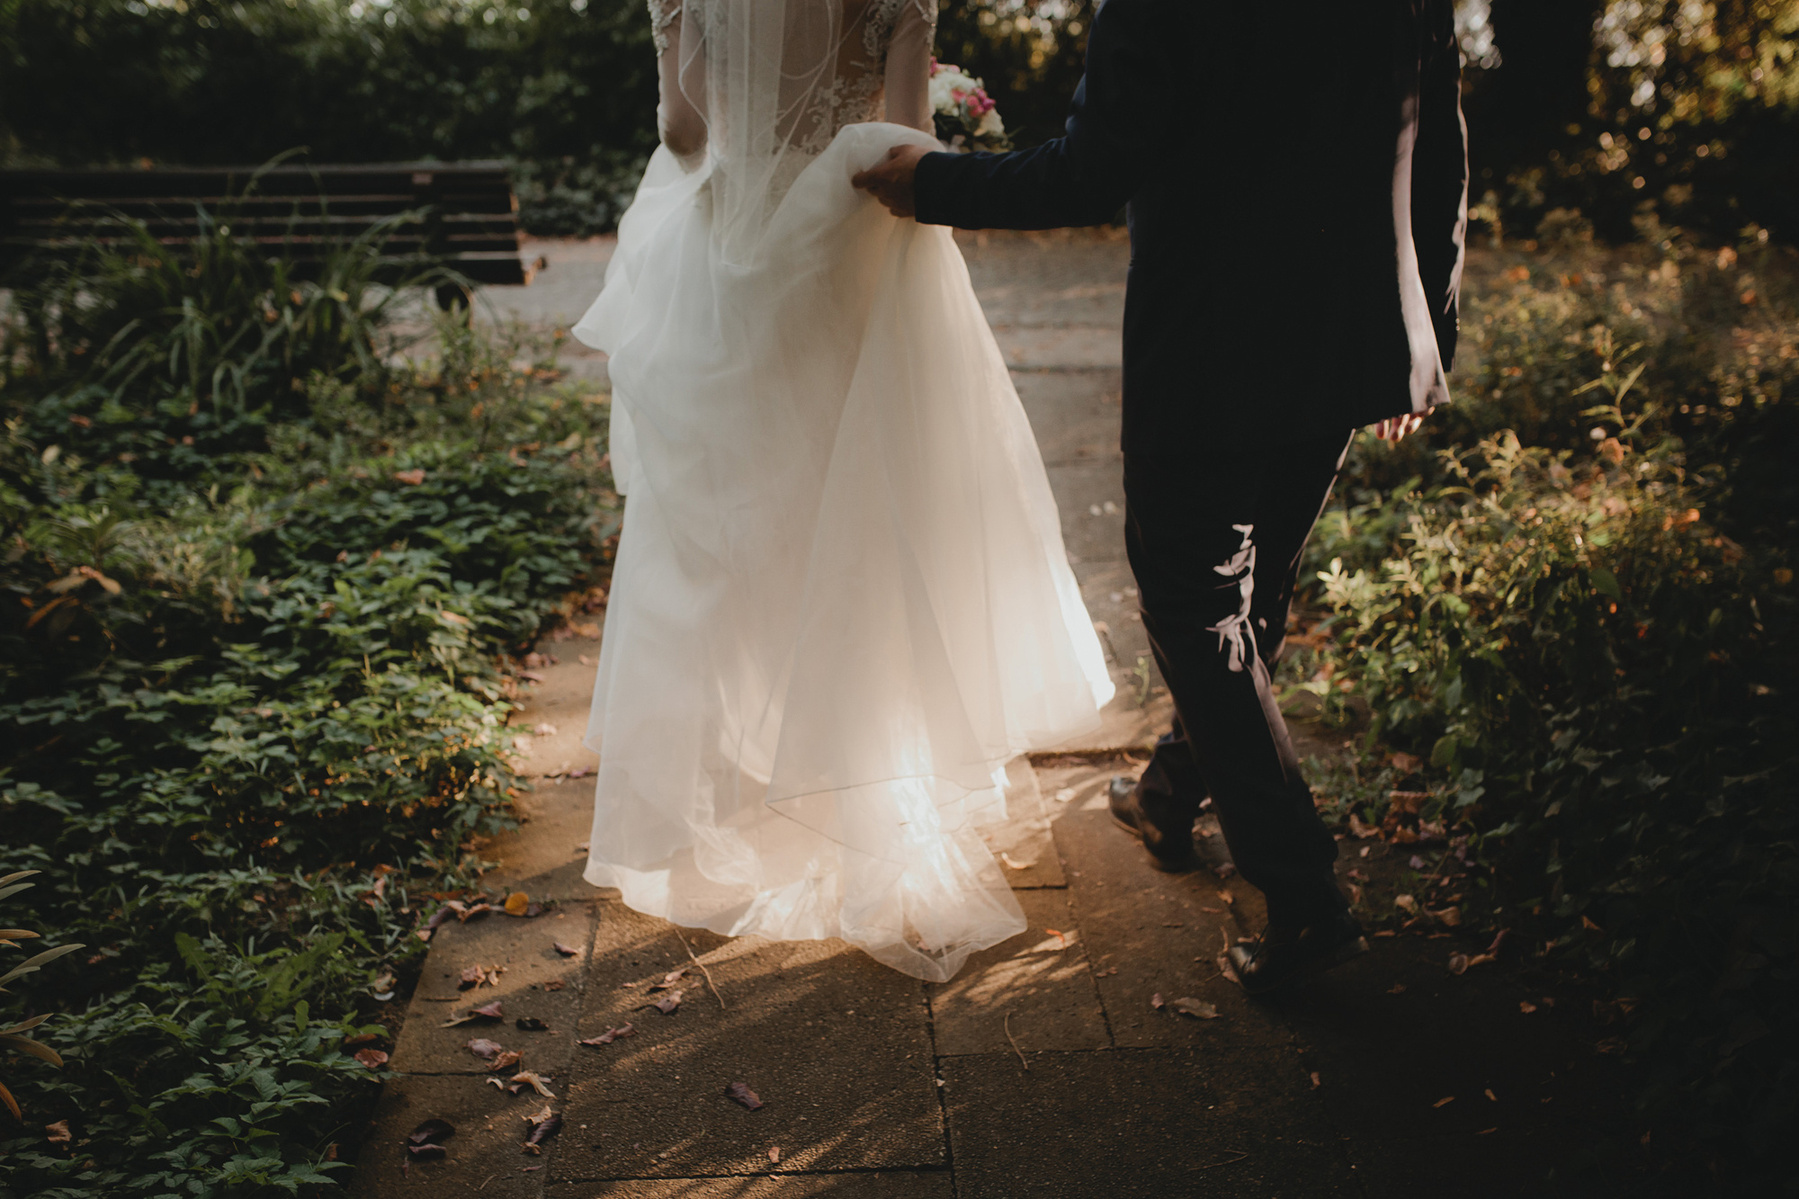 Der Bräutigam hebt die Schleppe des Hochzeitskleides an während die Braut durch den Park läuft.